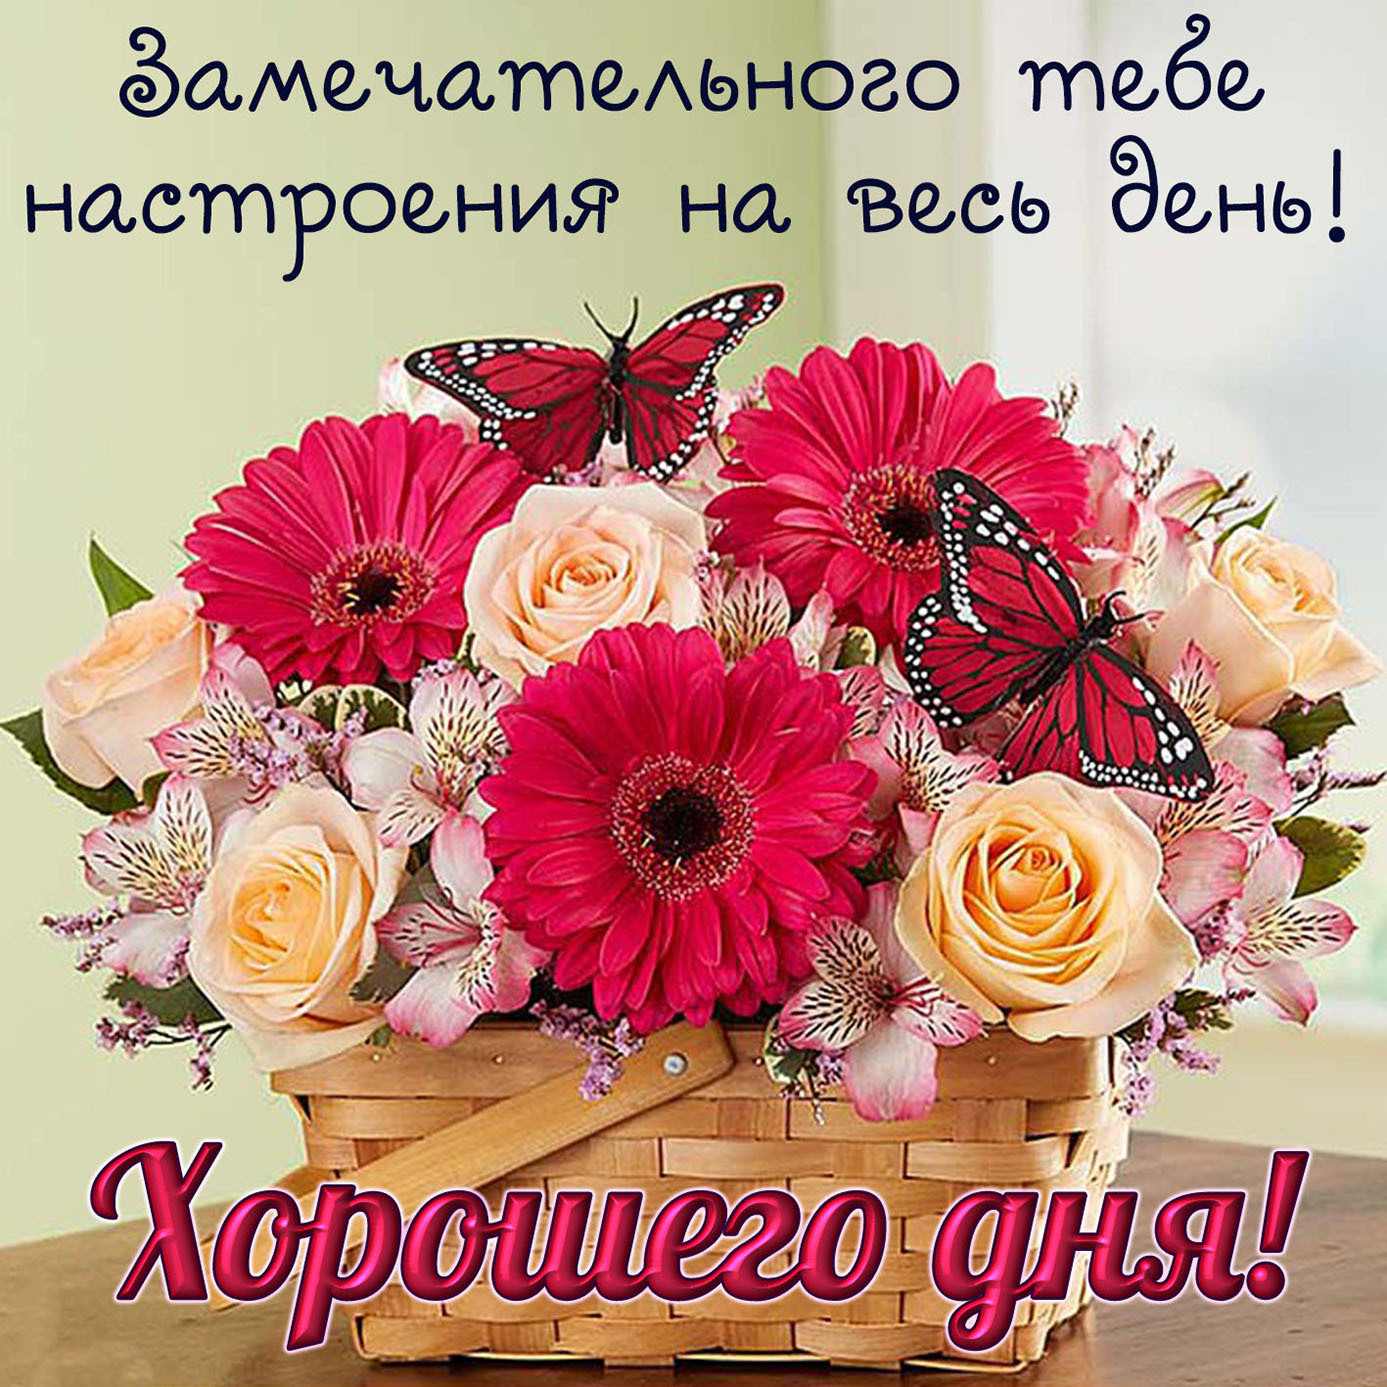 Добрый день самые красивые картинки. Хорошего дня и отличного настроения. Цветы с пожеланиями хорошего дня. Поздравления с хорошим настроением. Поздравления с добрым днем и с хорошим настроением.